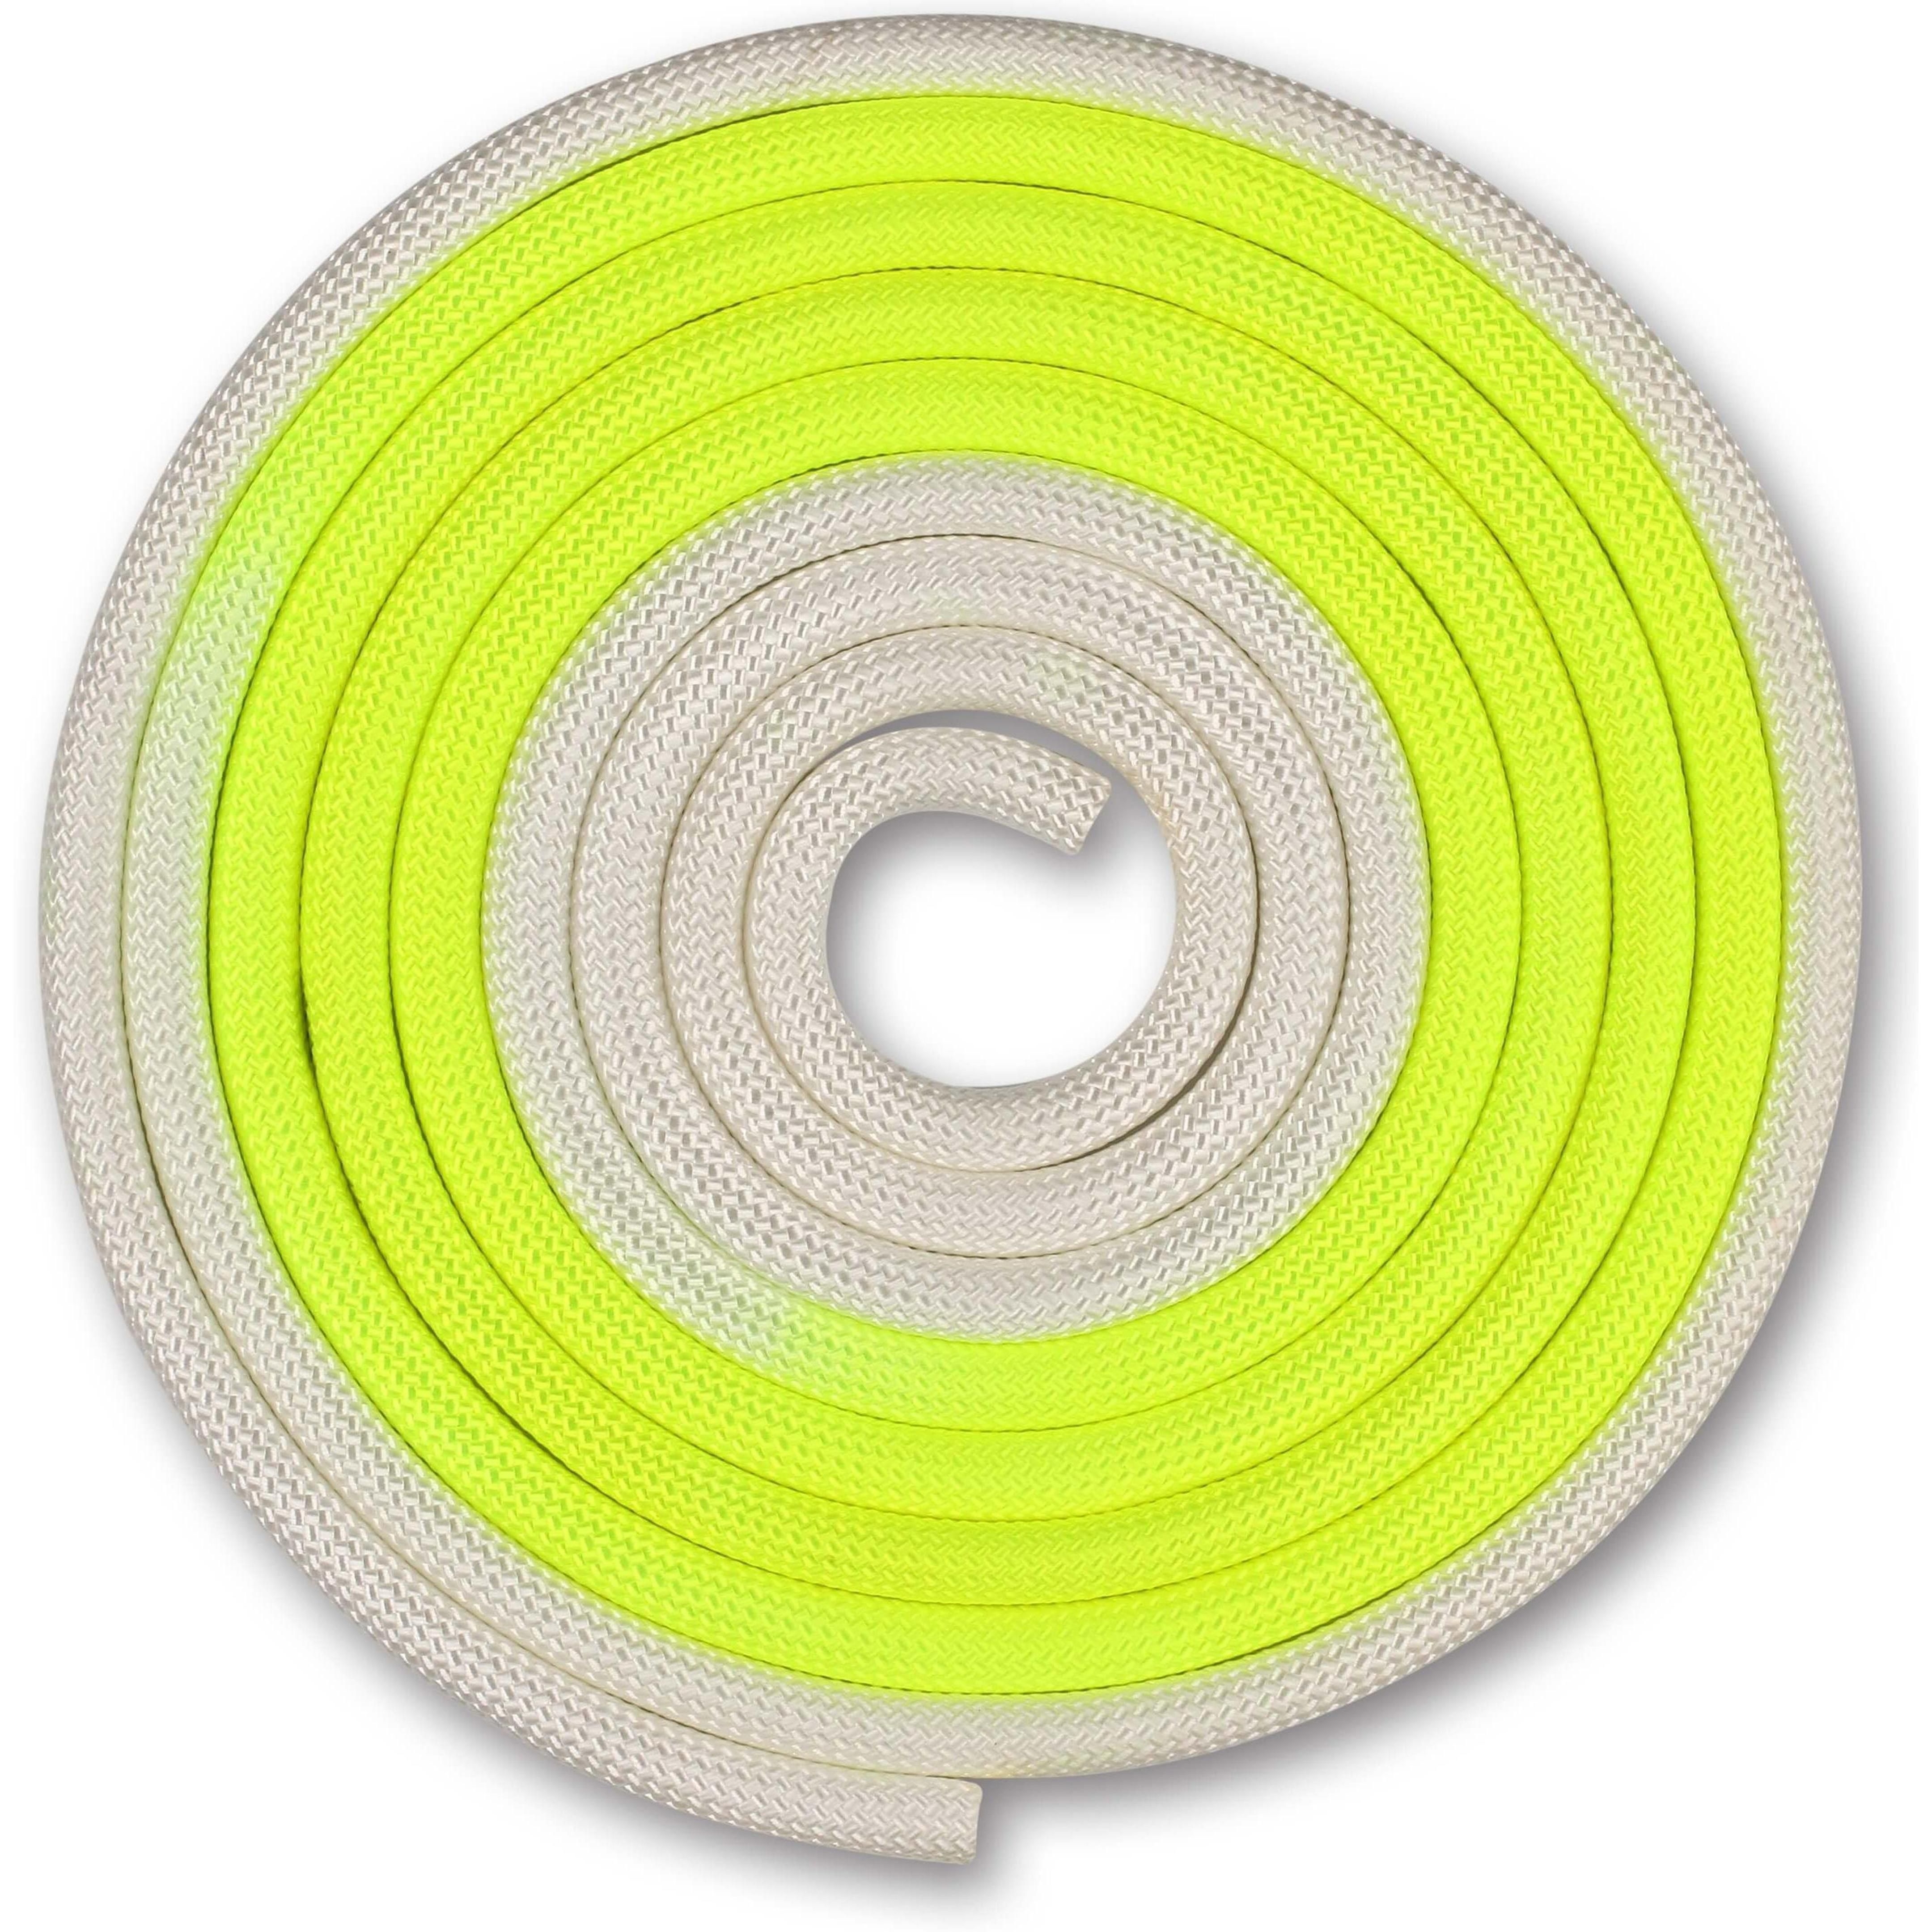 Cuerda para Gimnasia Rítmica Ponderada 165g INDIGO Bicolor 3 m Blanco-Limon